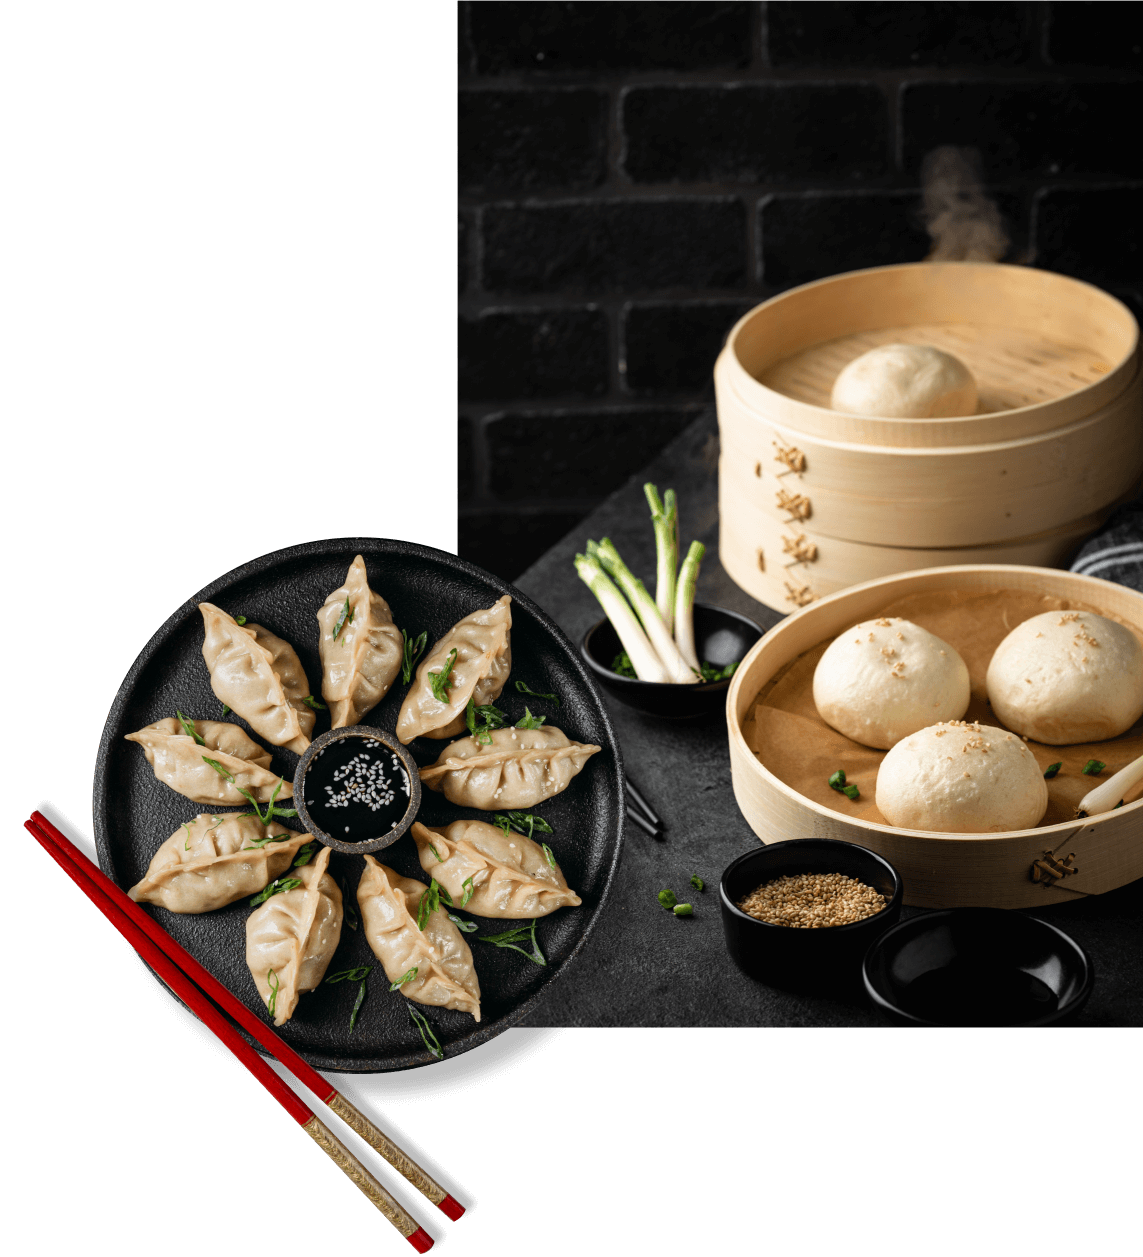 dumplings - wontons - & - baozi